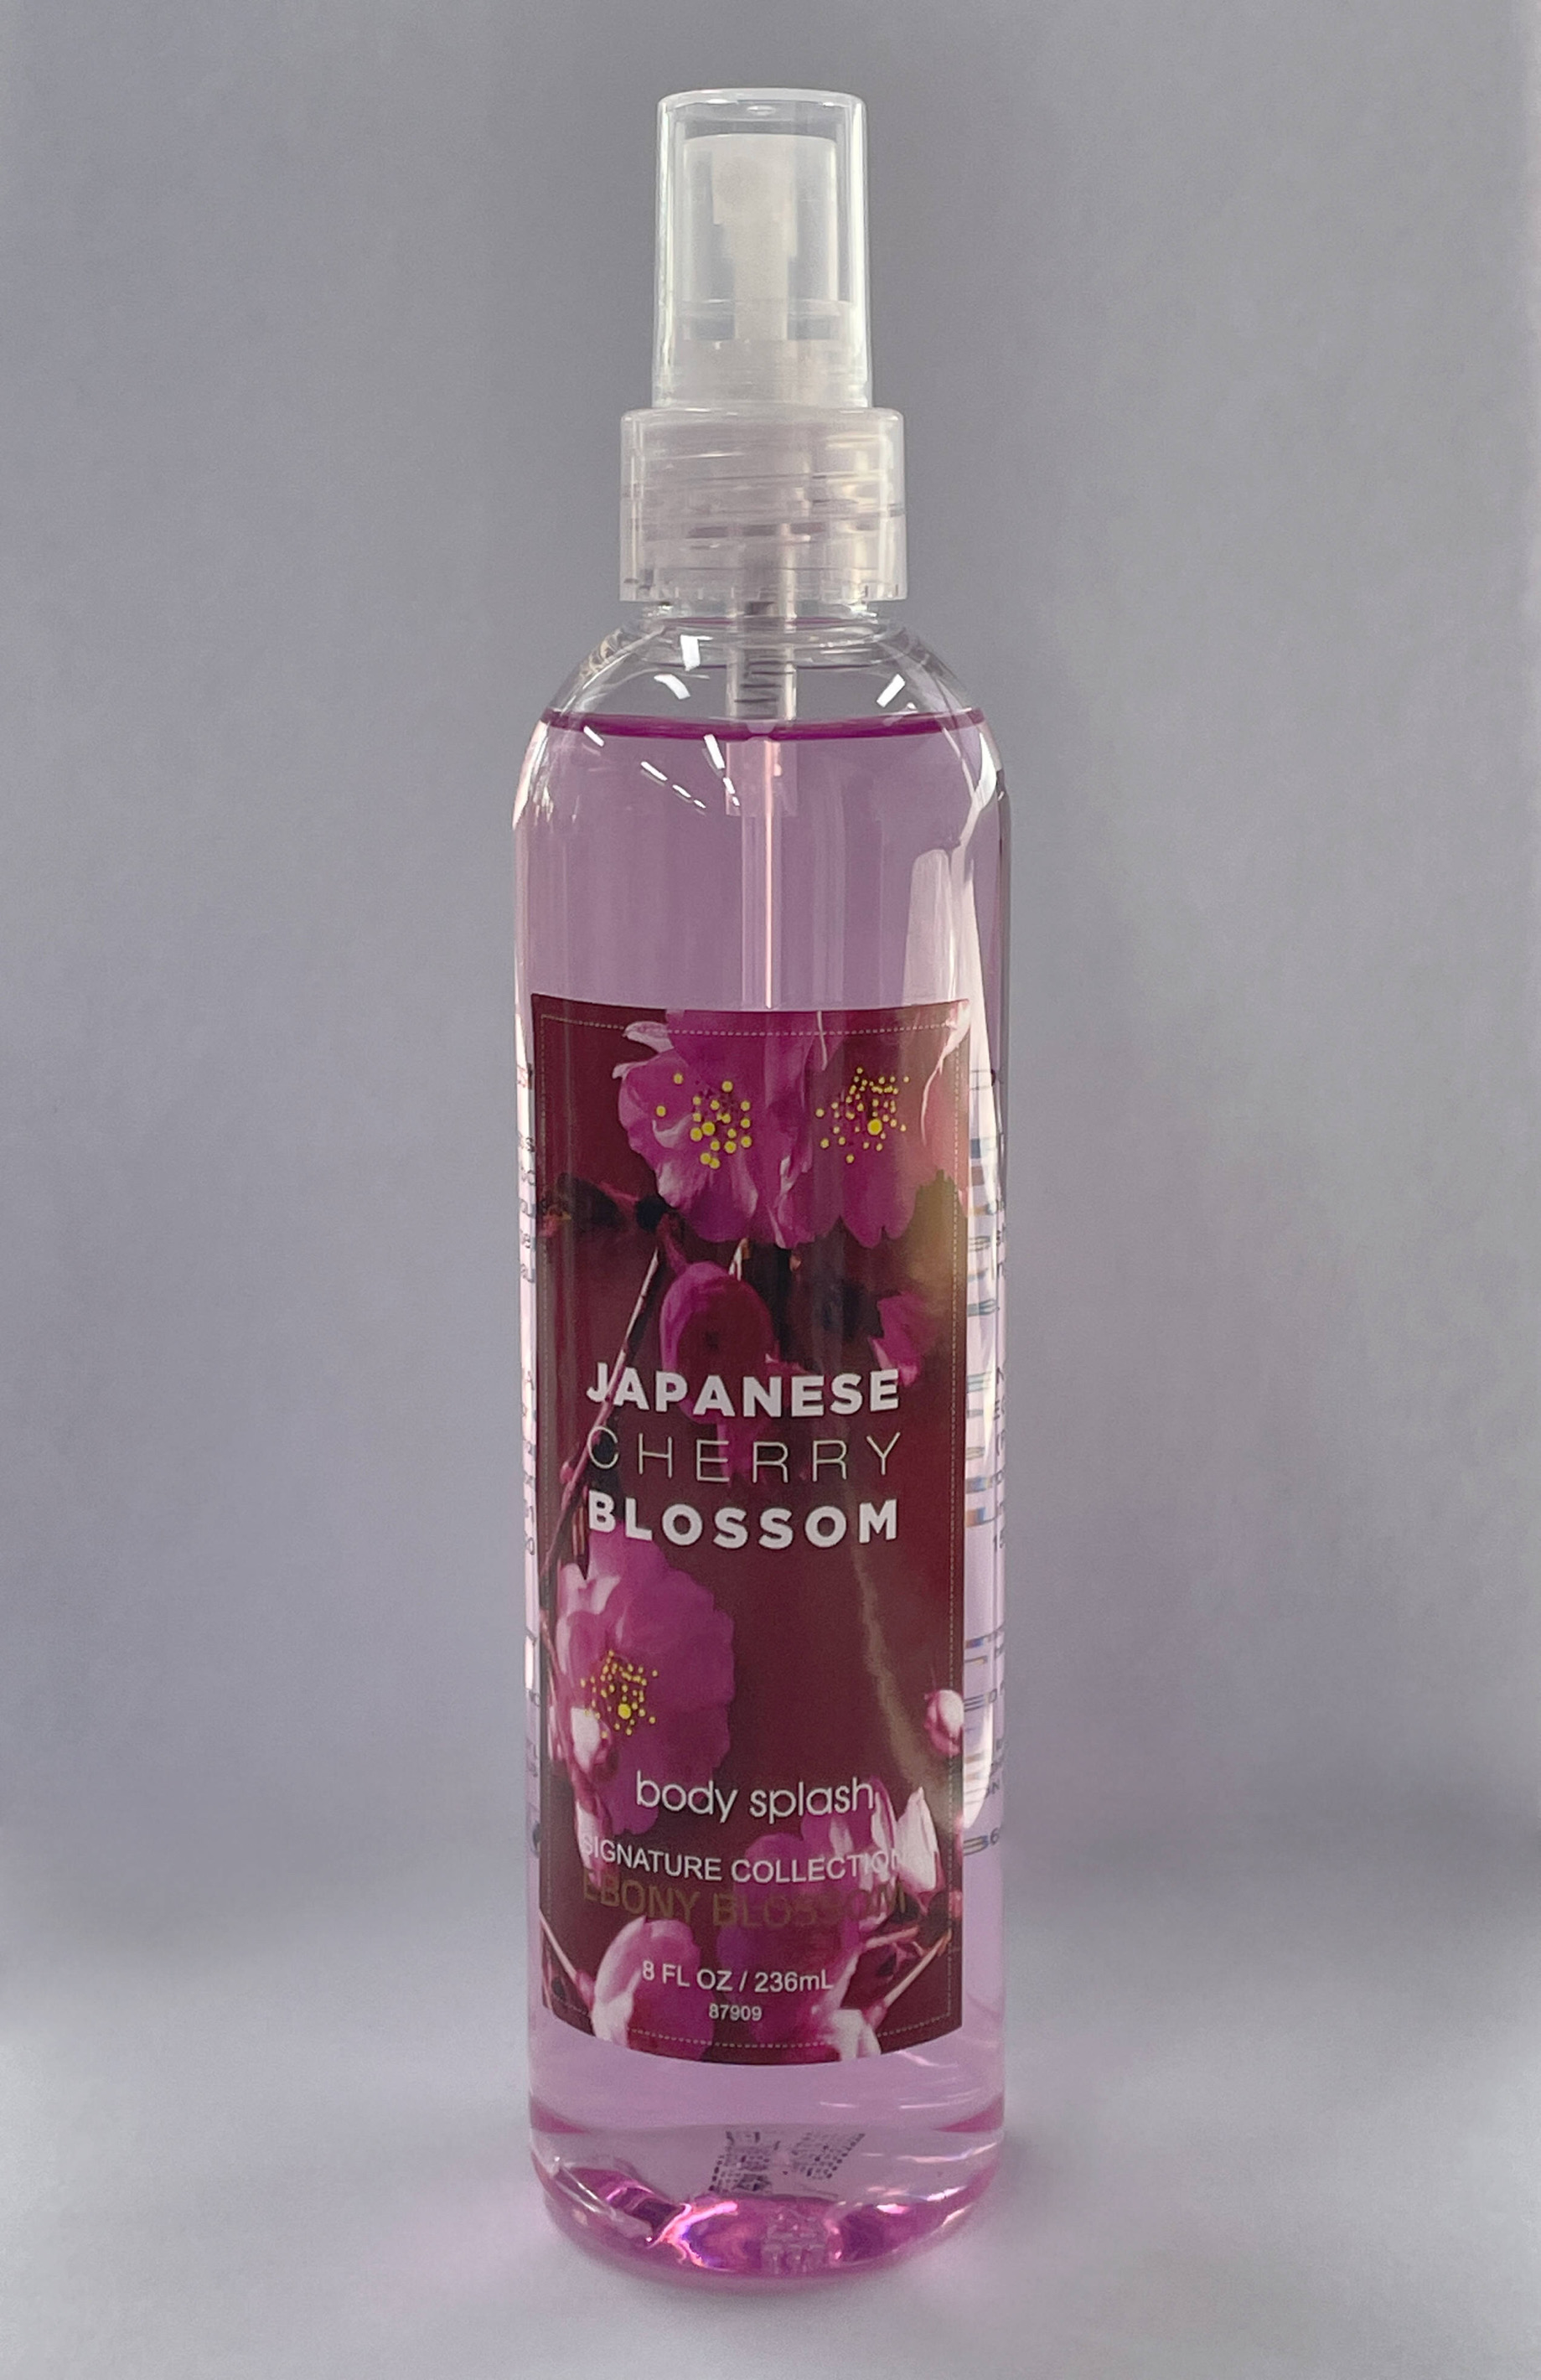 Ebony Blossom Japanese Cherry Blossom Body Splash